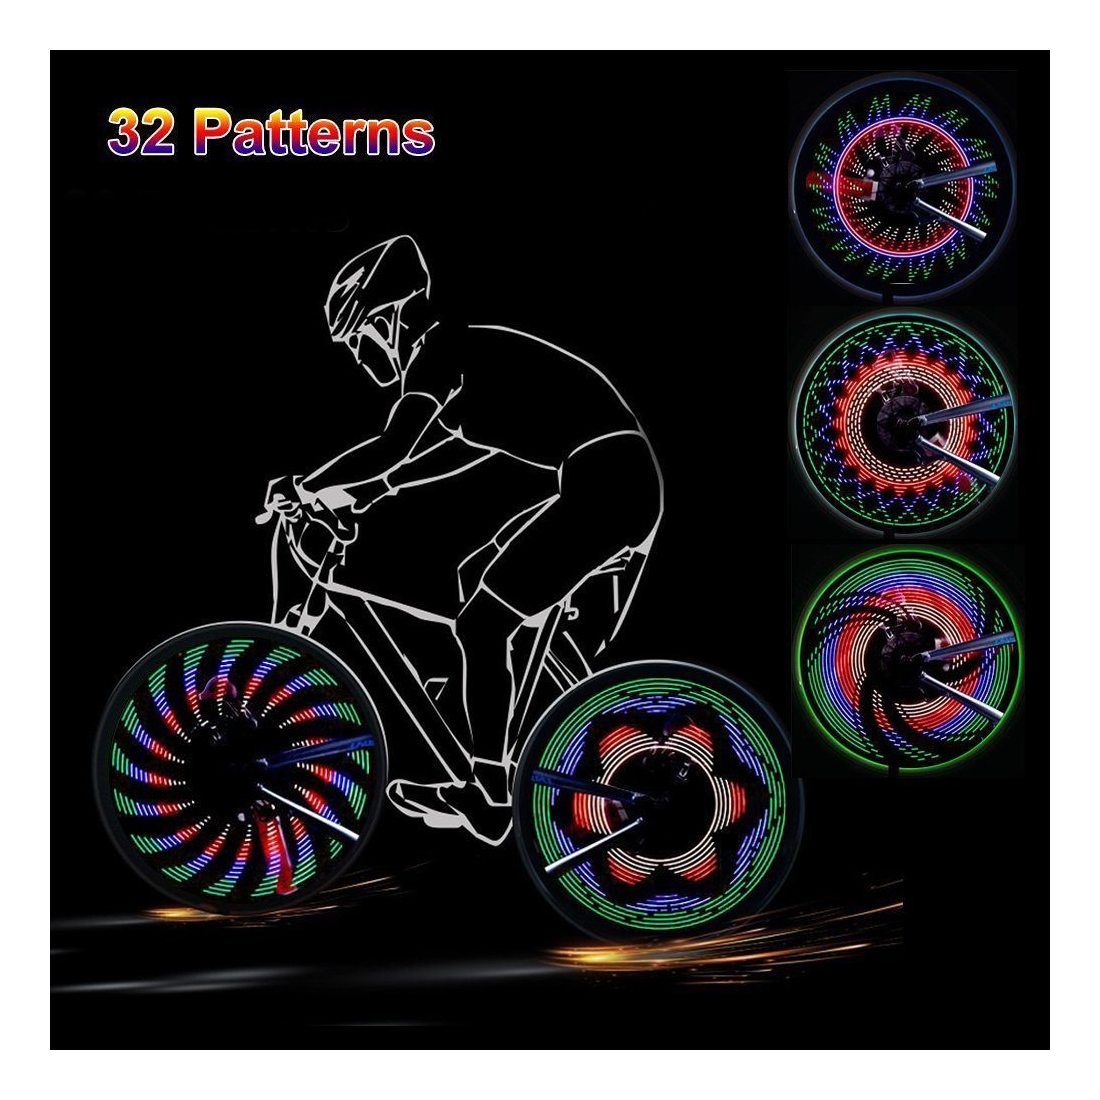 Bliplus Eclairage pour Vélo colorées 32 LED Eclairage Roue de Vélo Spoke Light pour Outdoor équitation